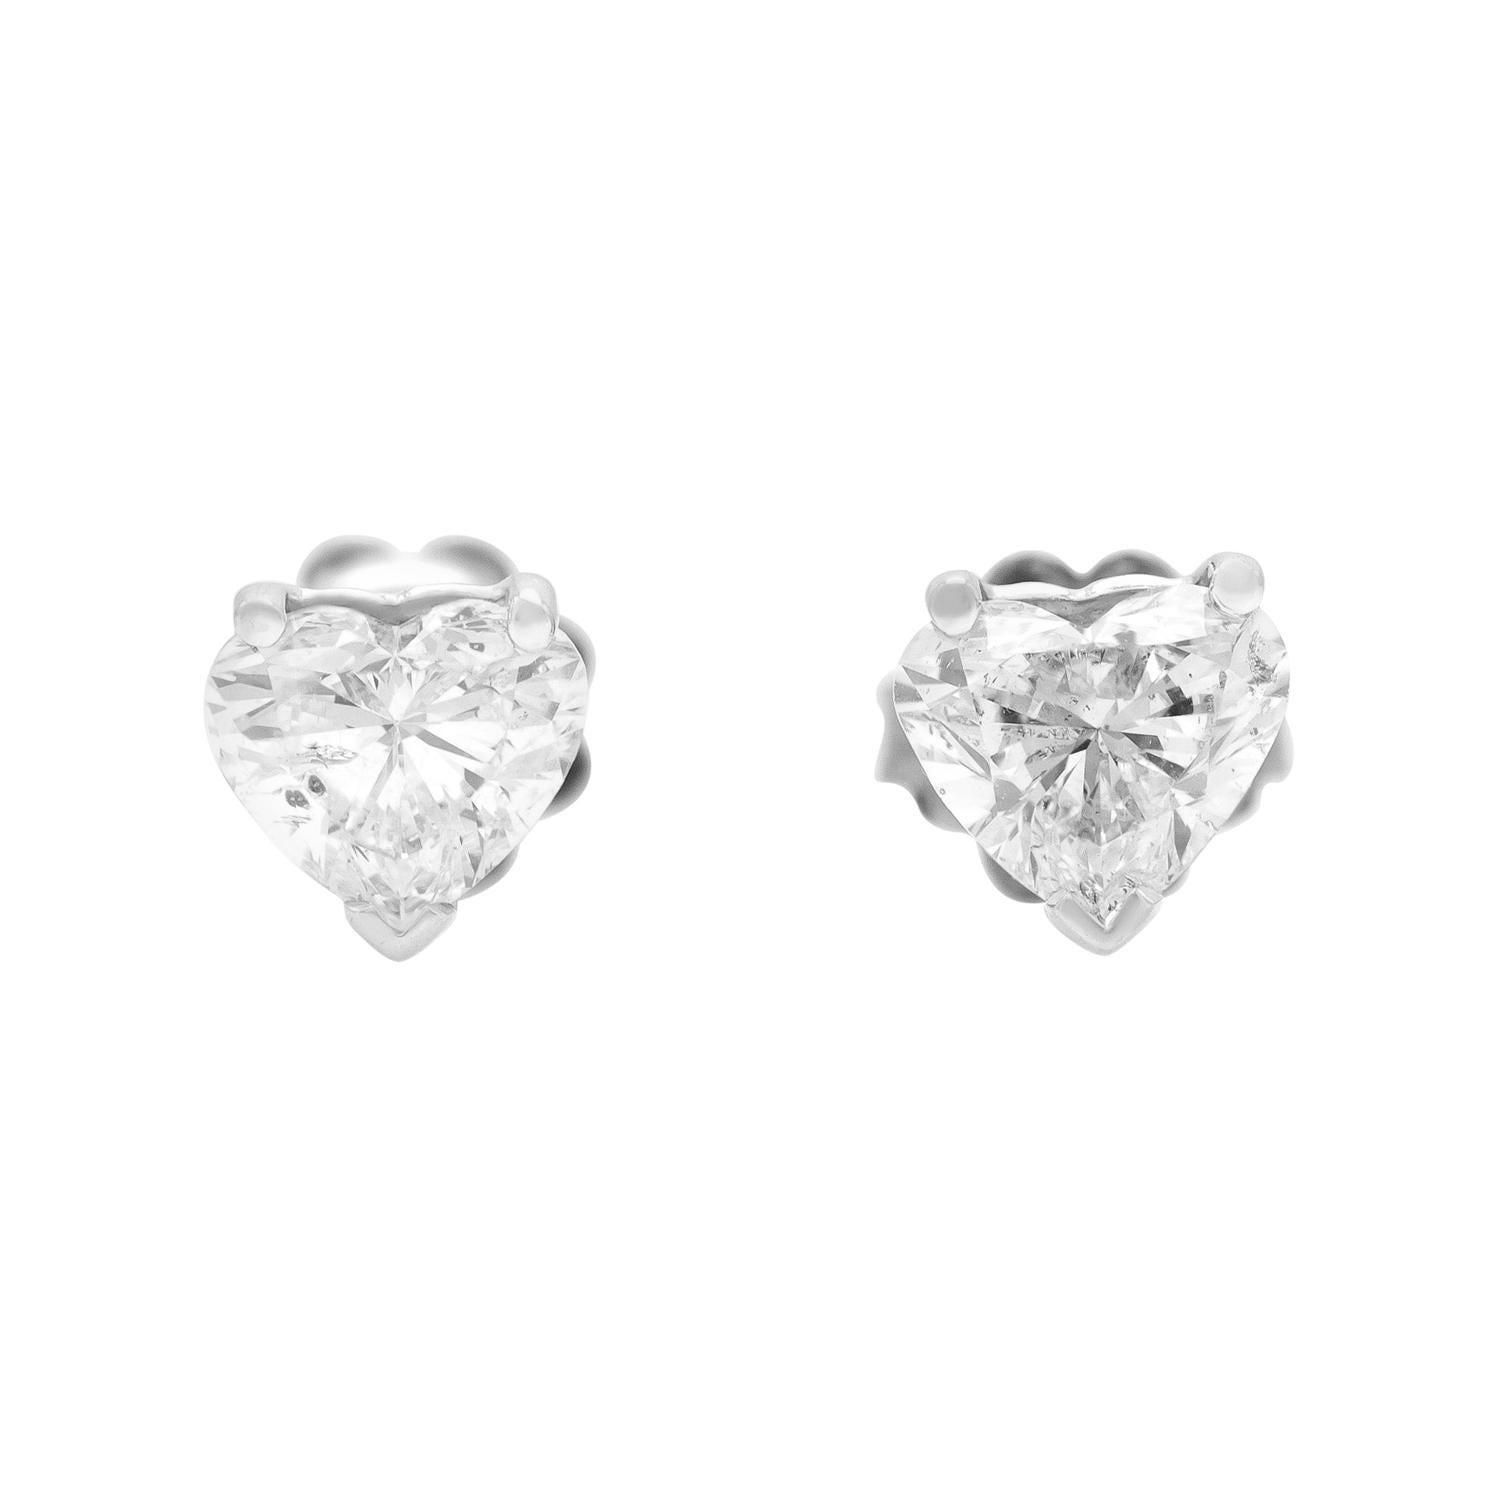 2.01 Carat Heart Shaped Diamond Stud Earrings